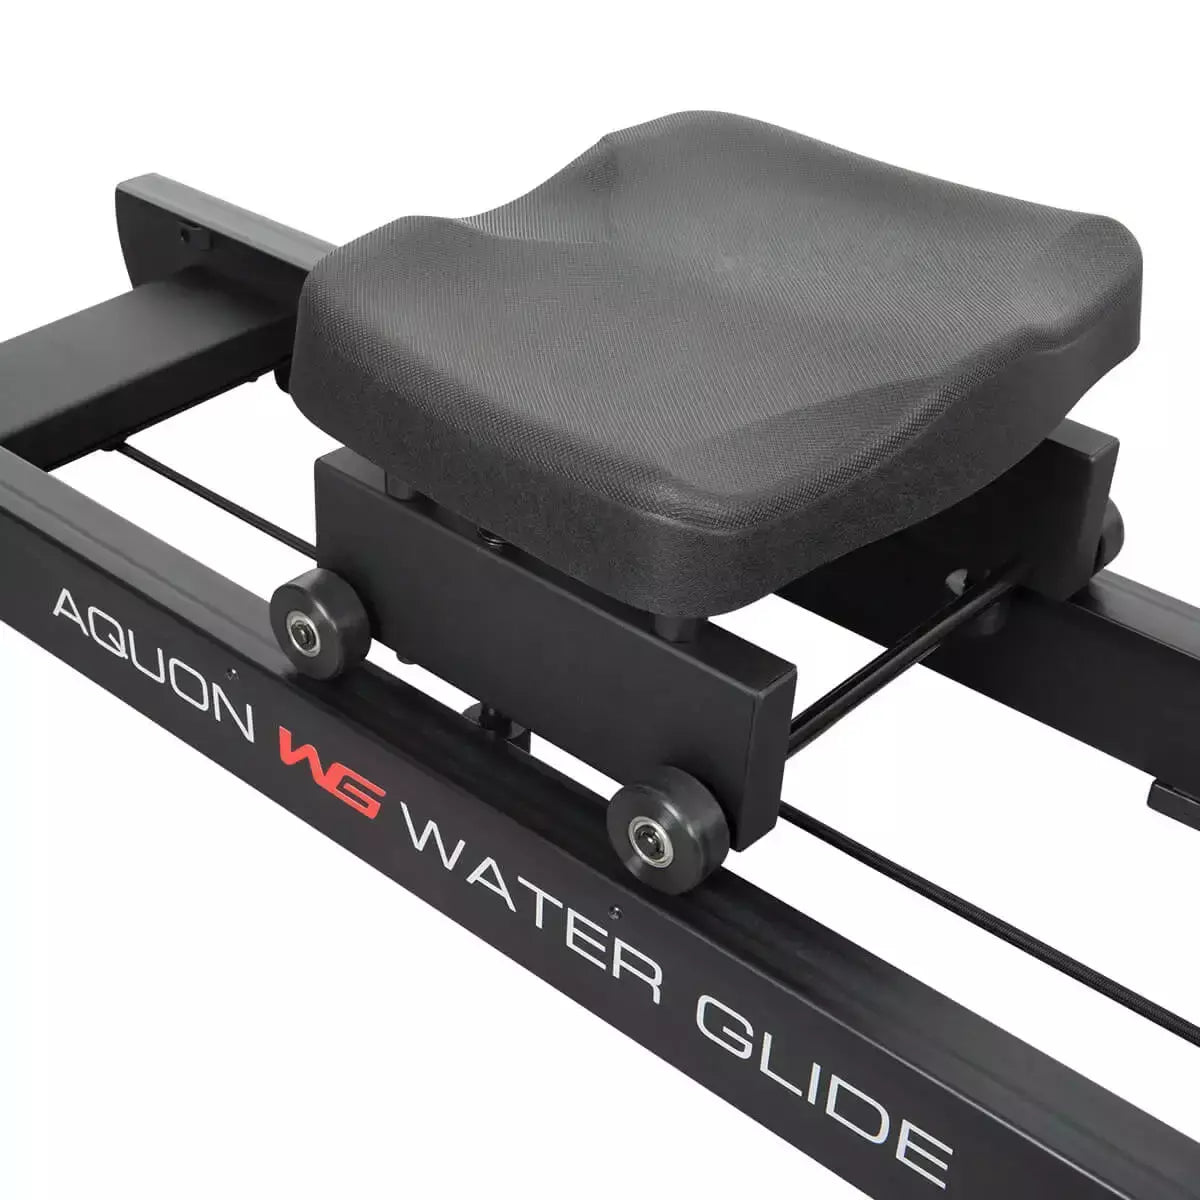 Vogatore Aquon Water Glide Linea FINNLO by Hammer Rowing Rematore Resistenza ad Acqua Richiudibile Salvaspazio cod. 3709 - TIMESPORT24